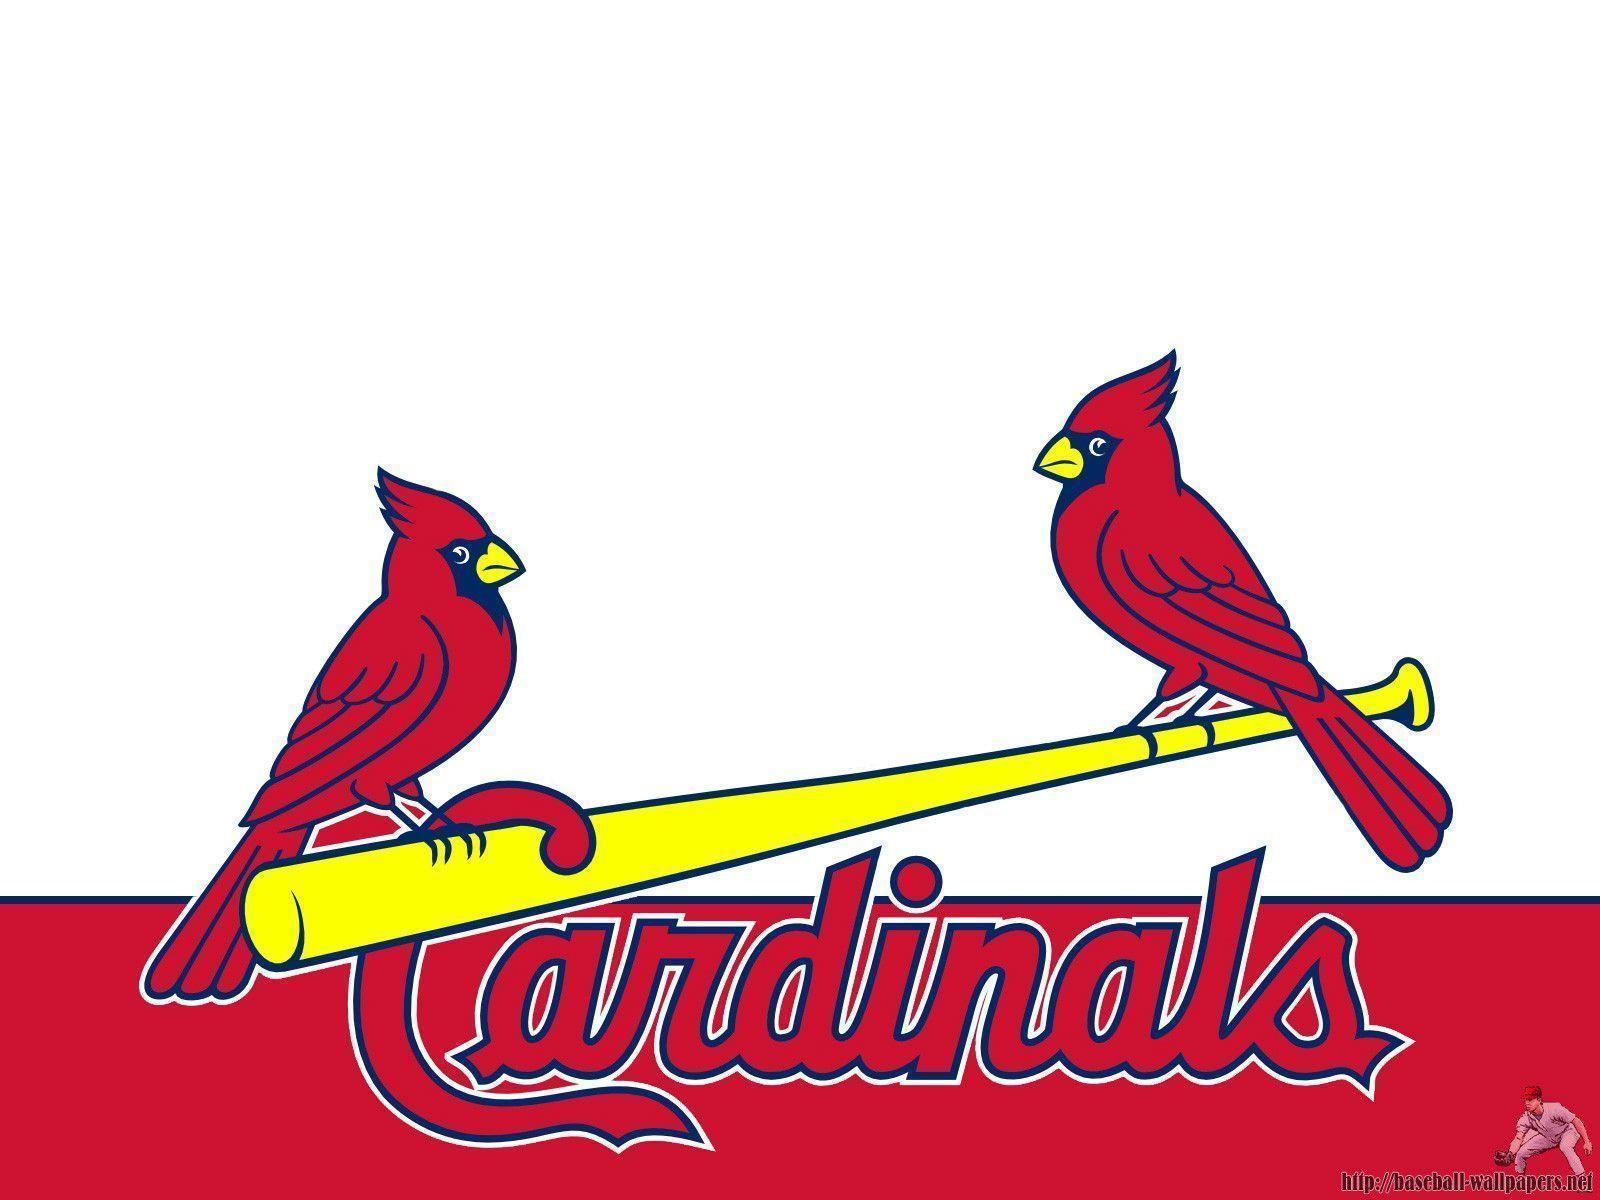 St. Louis Cardinals Uniform